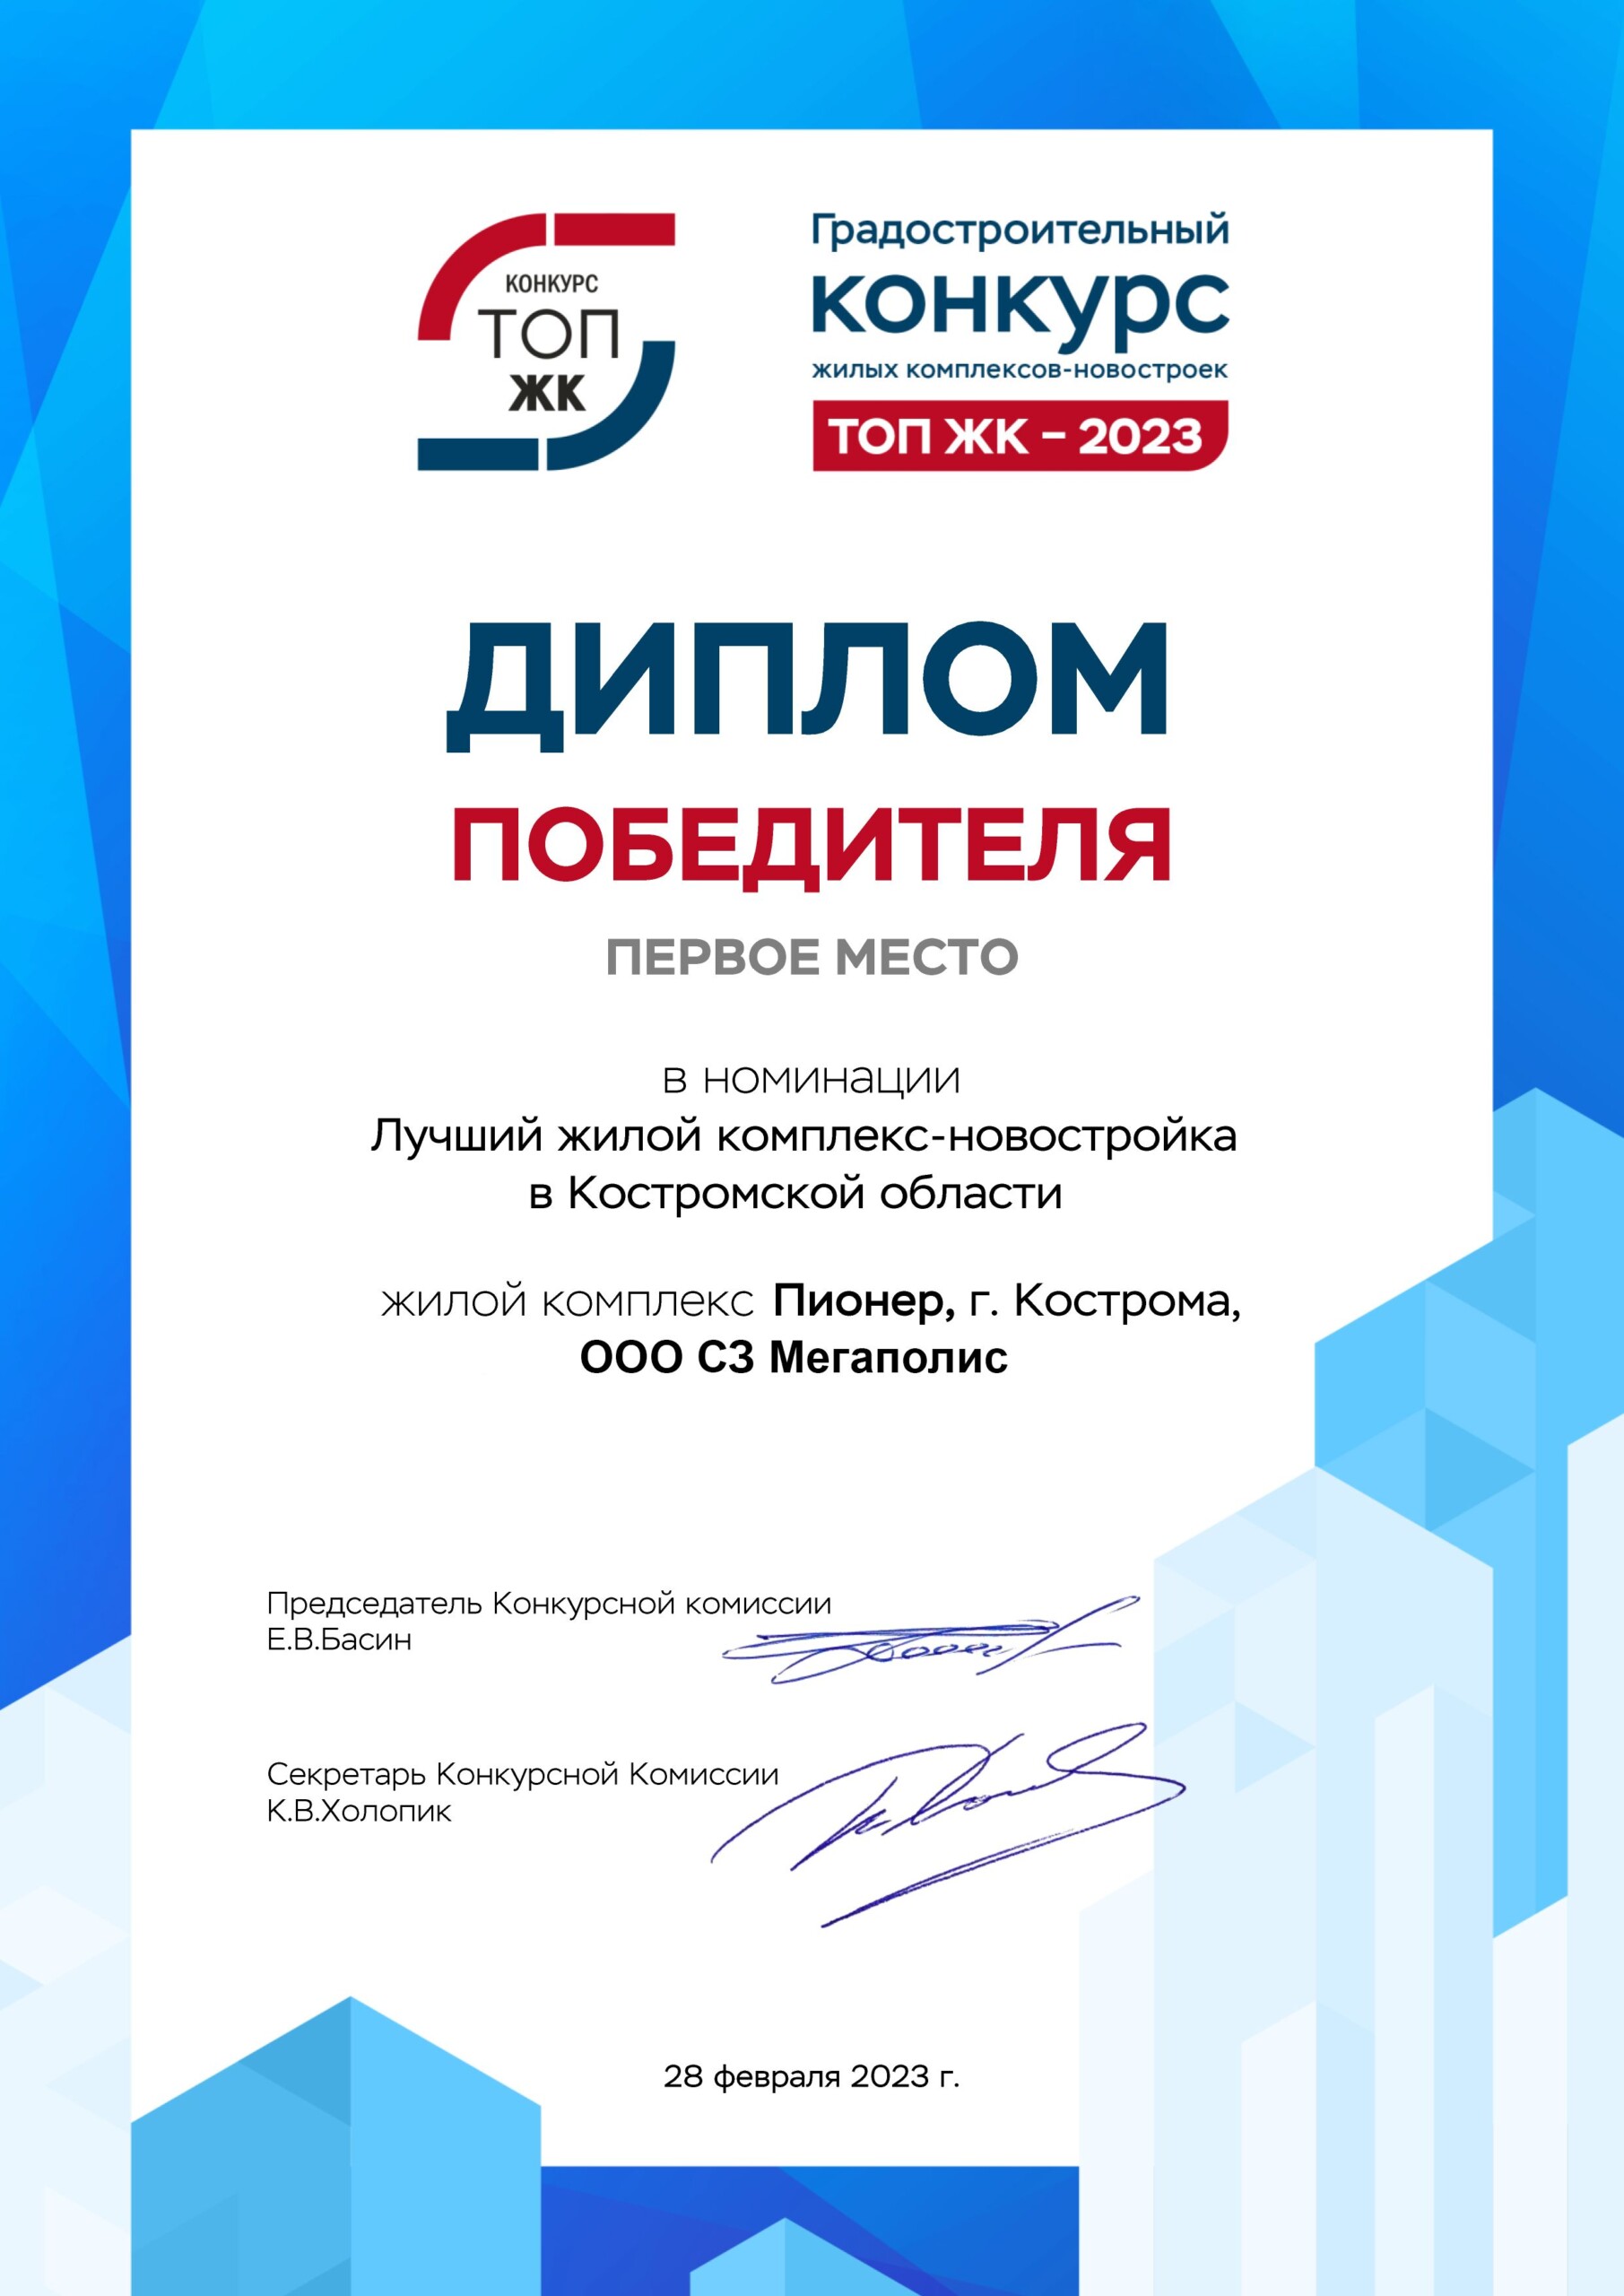 ЖК Пионер от Костромского застройщика Мегаполис признан лучшим жилым комплексом Костромской области по версии ТОП ЖК 2023